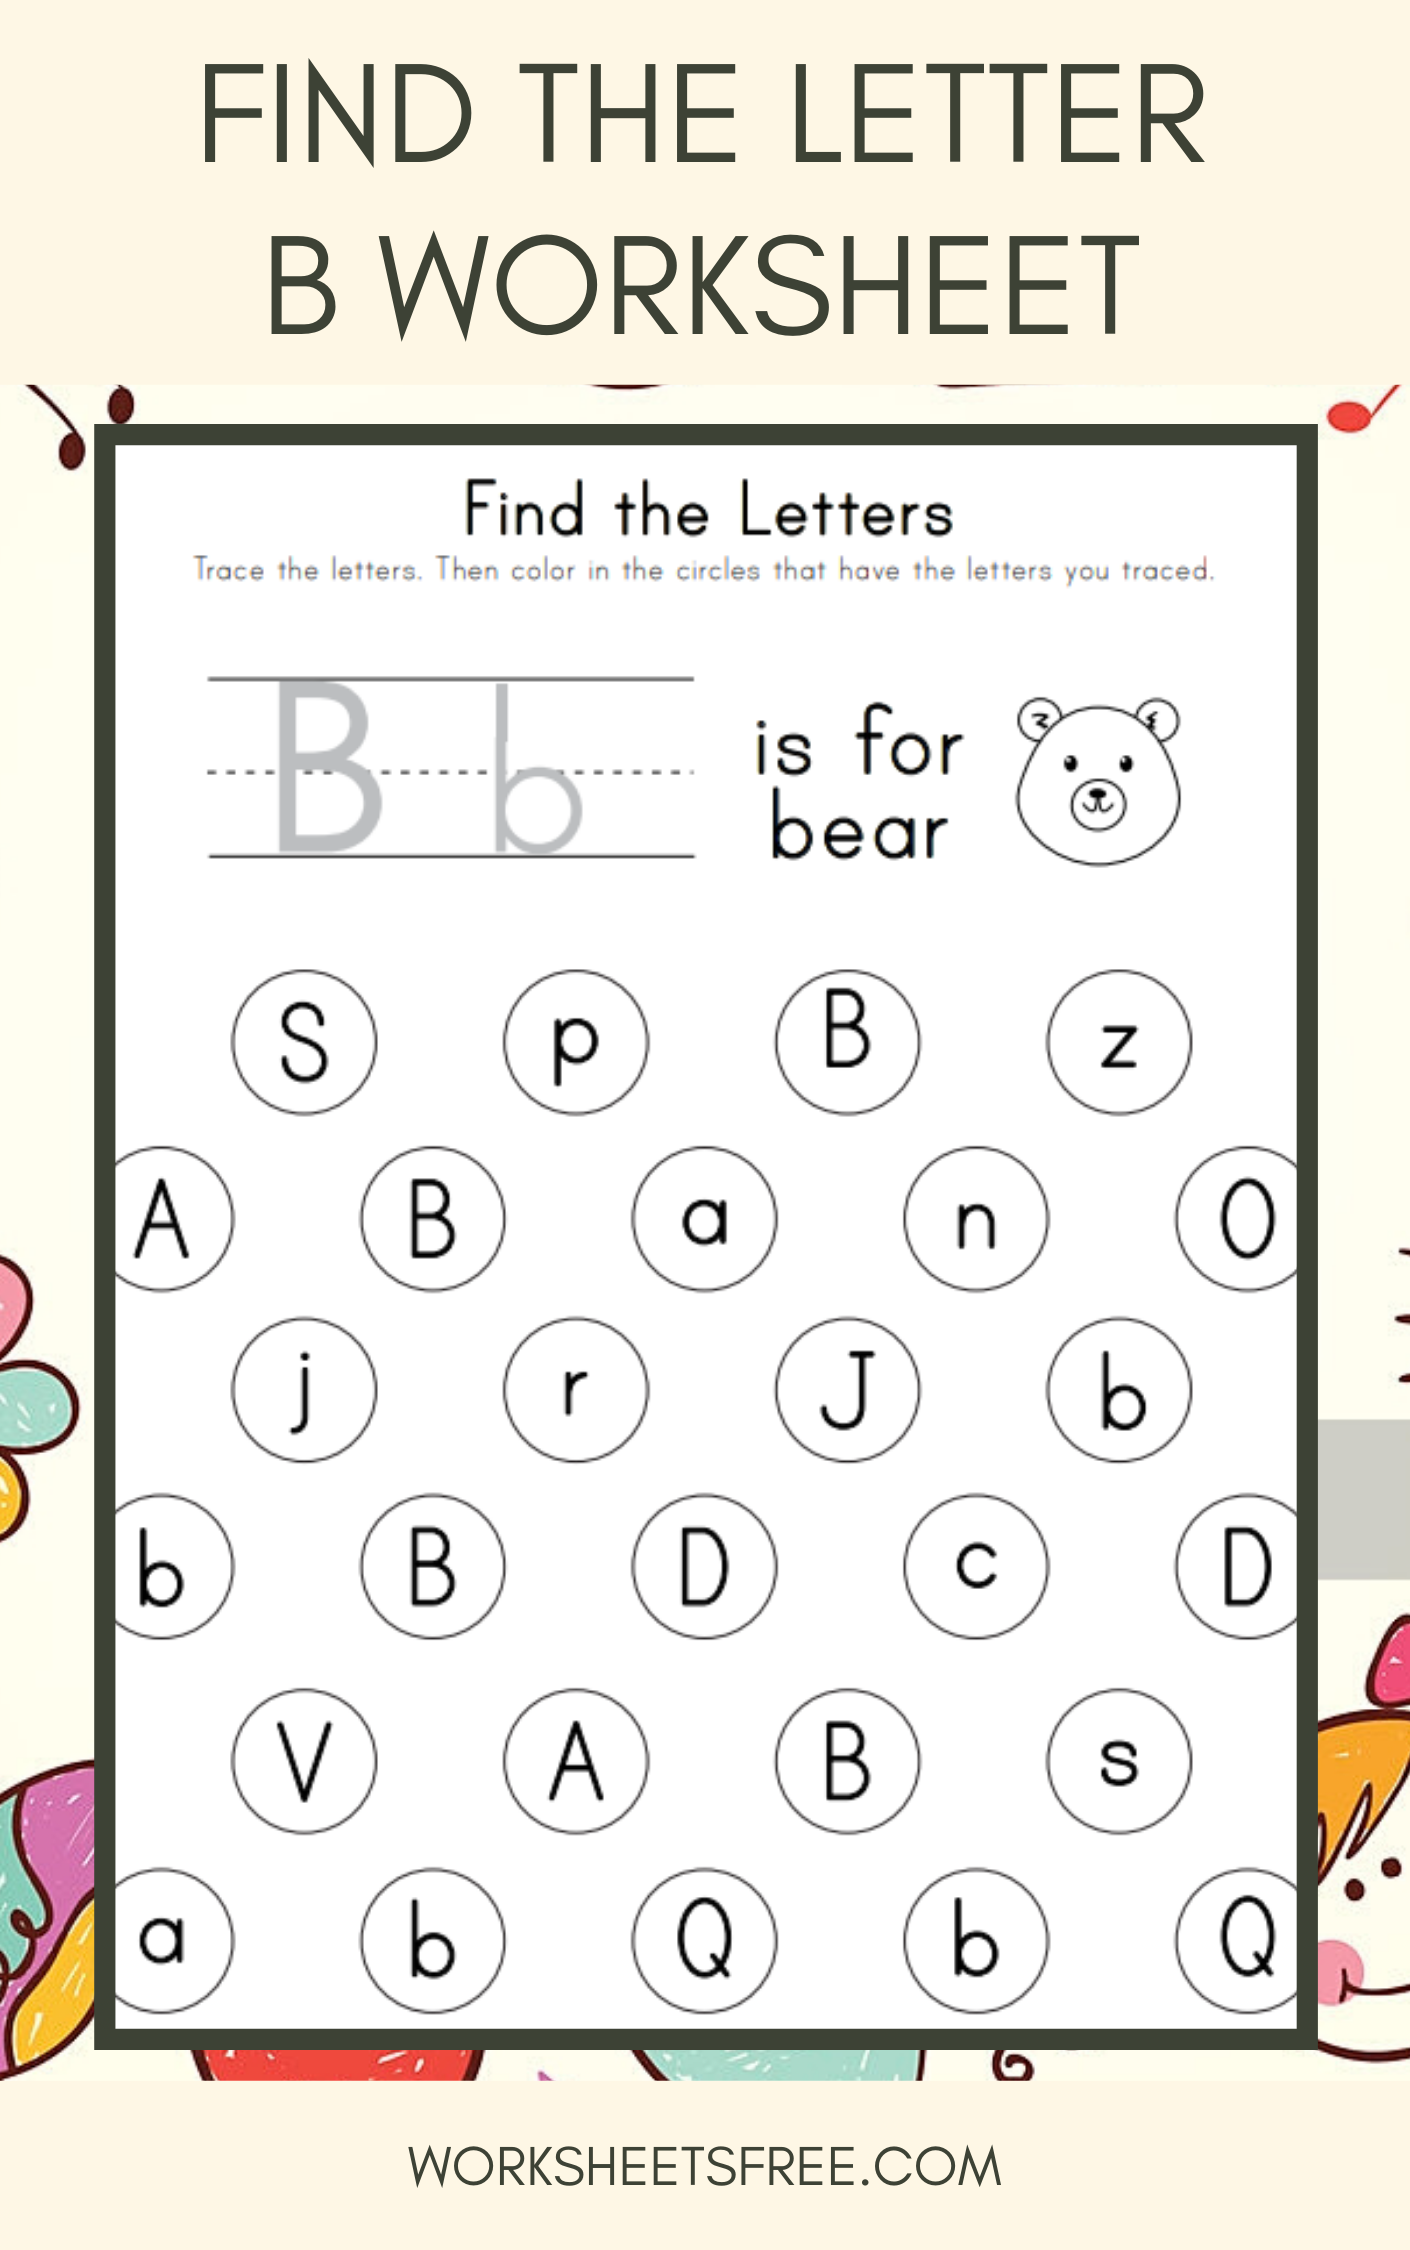 printable-letter-b-worksheets-for-kindergarten-preschoolers-trace-letter-b-worksheets-activity